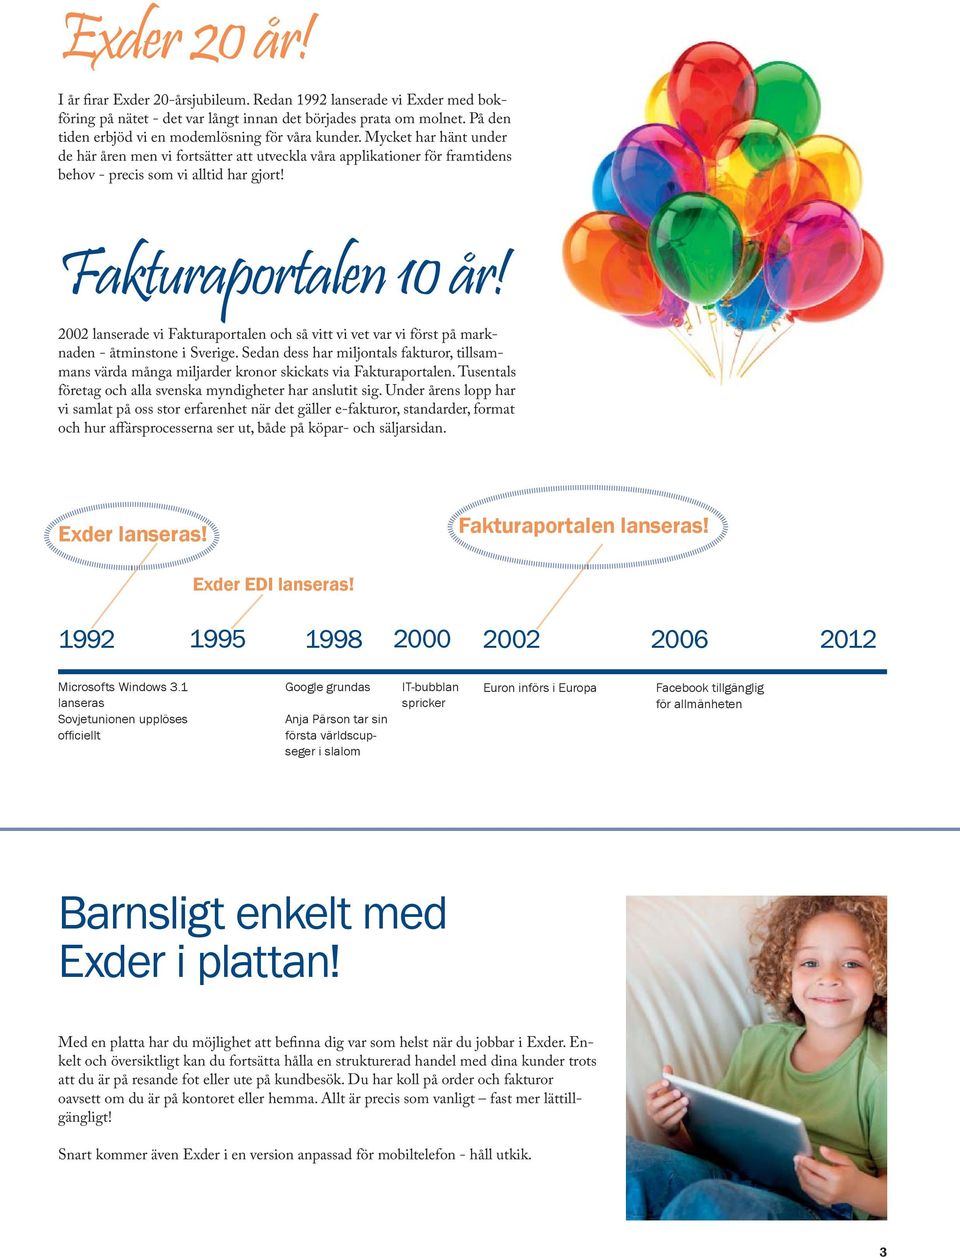 Fakturaportalen 10 år! 2002 lanserade vi Fakturaportalen och så vitt vi vet var vi först på marknaden - åtminstone i Sverige.